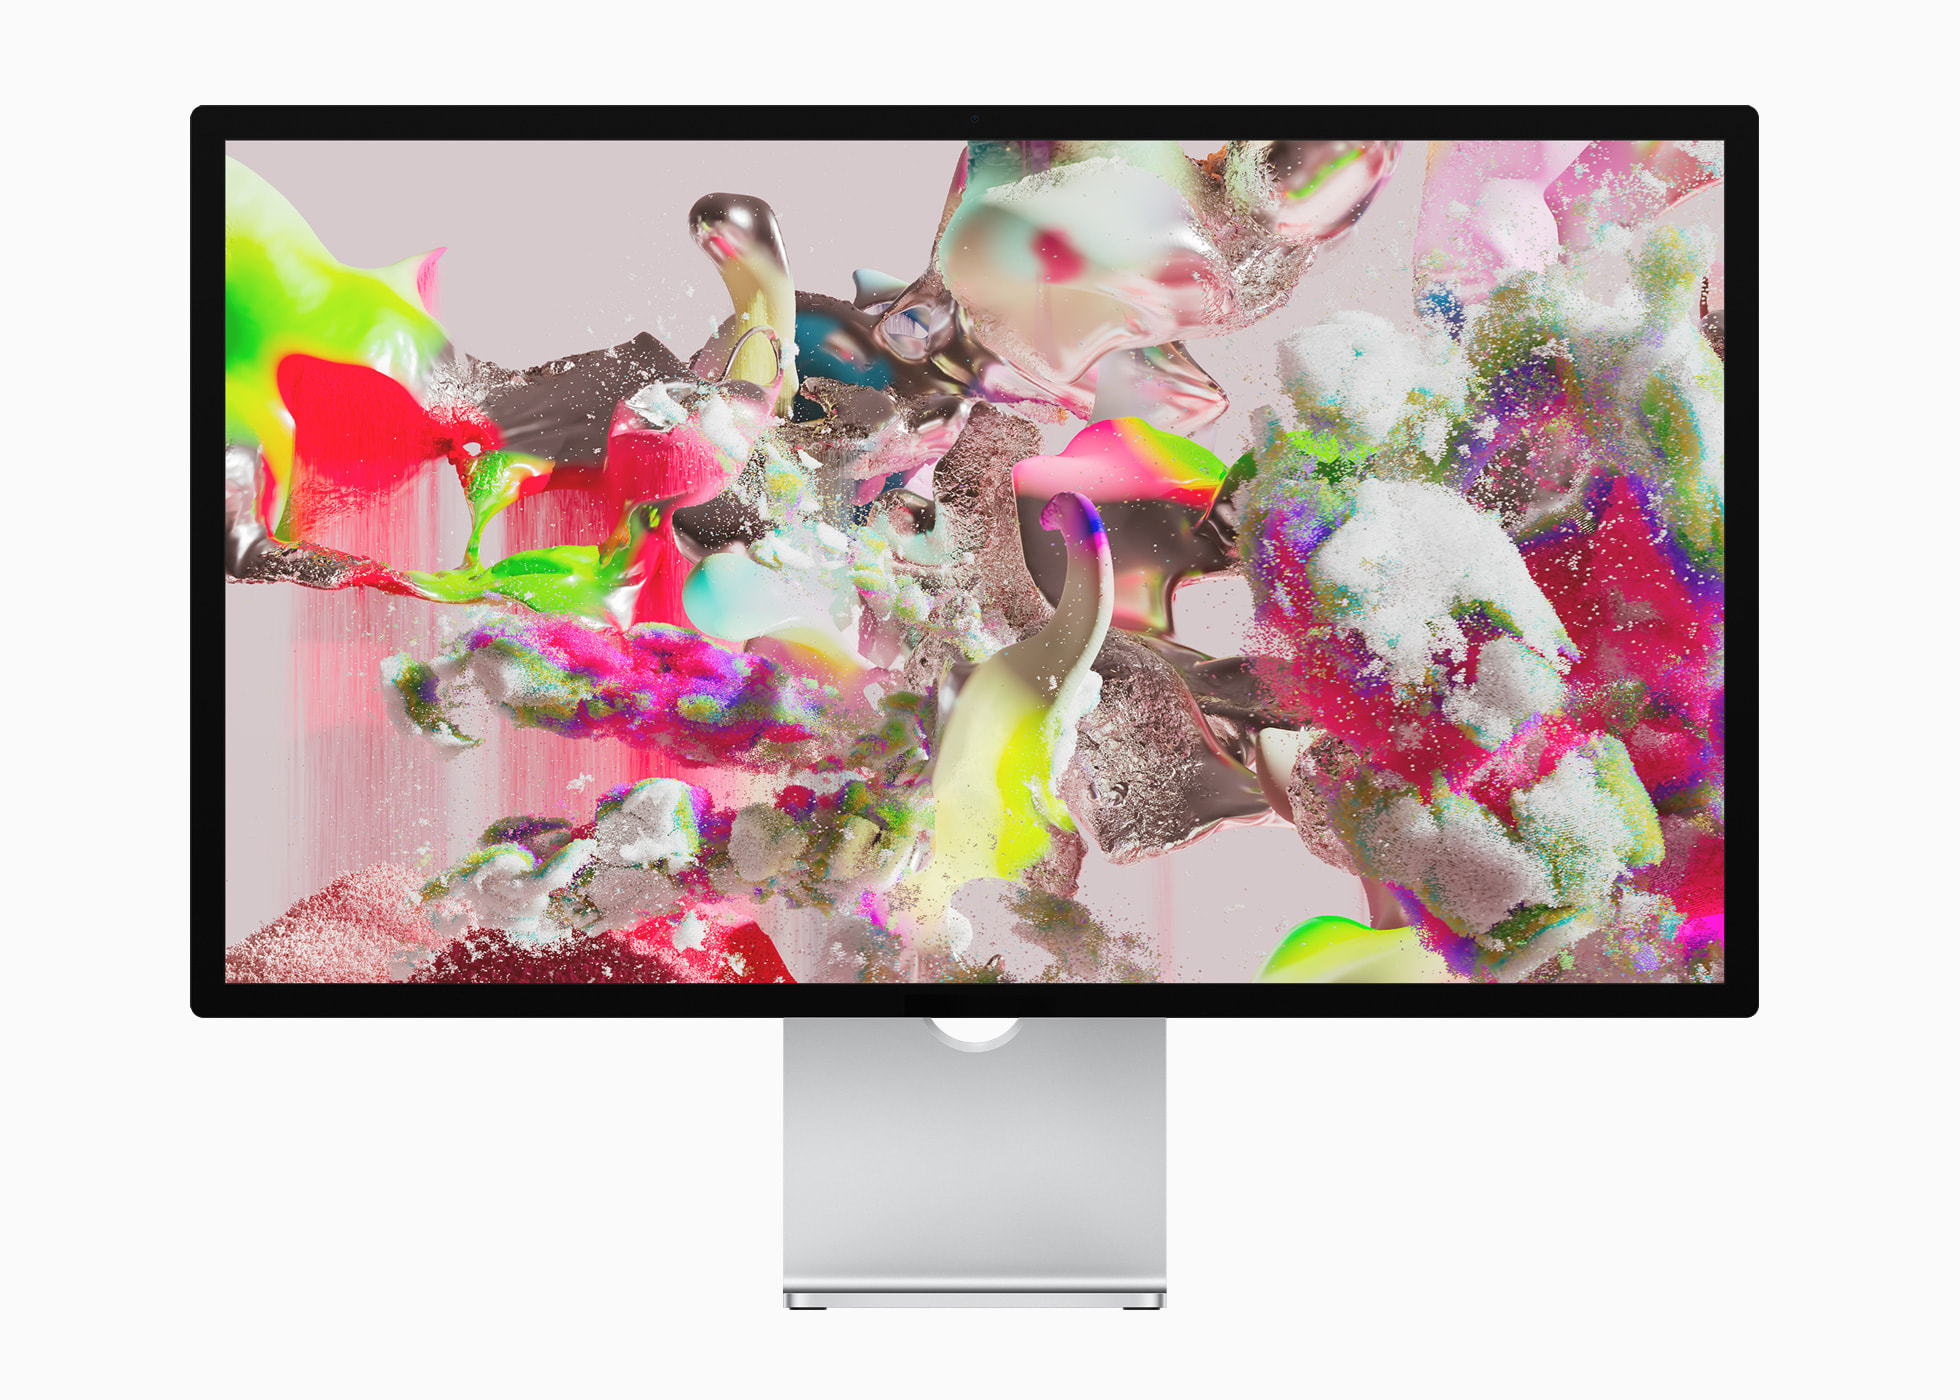 Đây là thời điểm tuyệt vời để bạn khám phá vẻ đẹp của máy tính Mac Studio mới. Với những bức ảnh rực rỡ và độ phân giải cao, bạn sẽ đắm chìm trong thế giới độc đáo chỉ có tại Mac Studio. Từ thiết kế đẹp mắt đến khả năng tiện dụng và độ chính xác cao, Mac Studio mới sẽ là thiết bị lý tưởng cho mọi nhu cầu sáng tạo của bạn.